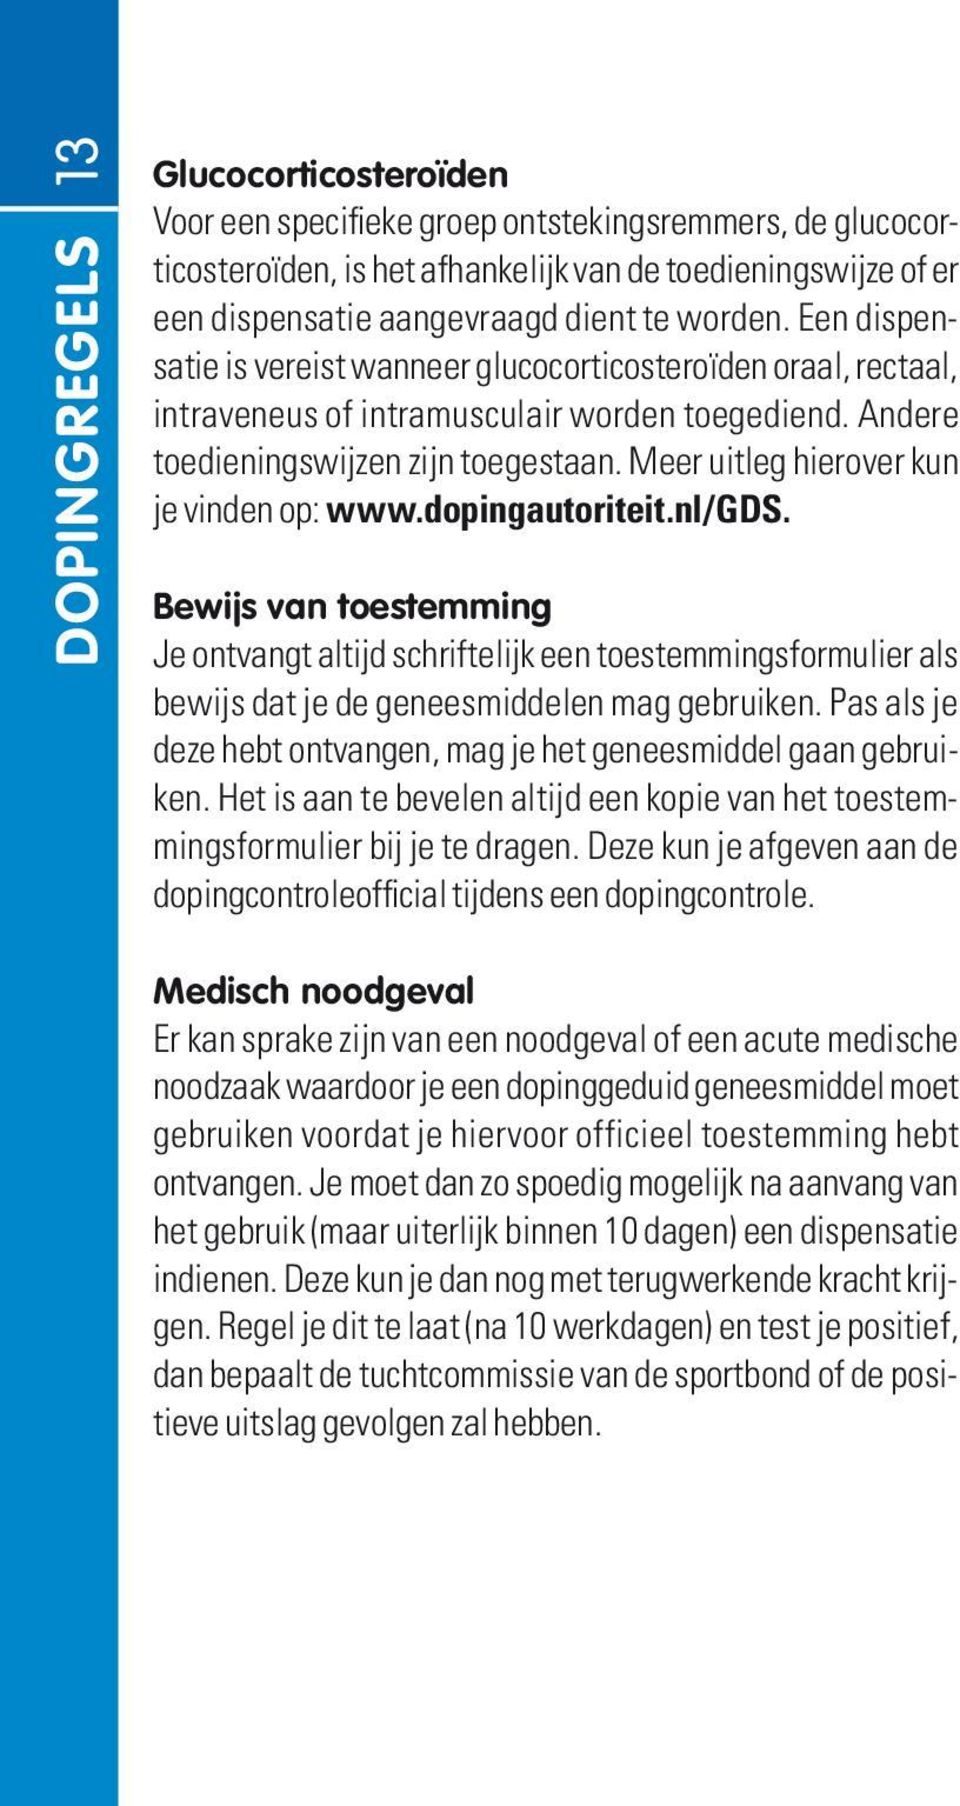 Meer uitleg hierover kun je vinden op: www.dopingautoriteit.nl/gds. Bewijs van toestemming Je ontvangt altijd schriftelijk een toestemmingsformulier als bewijs dat je de geneesmiddelen mag gebruiken.